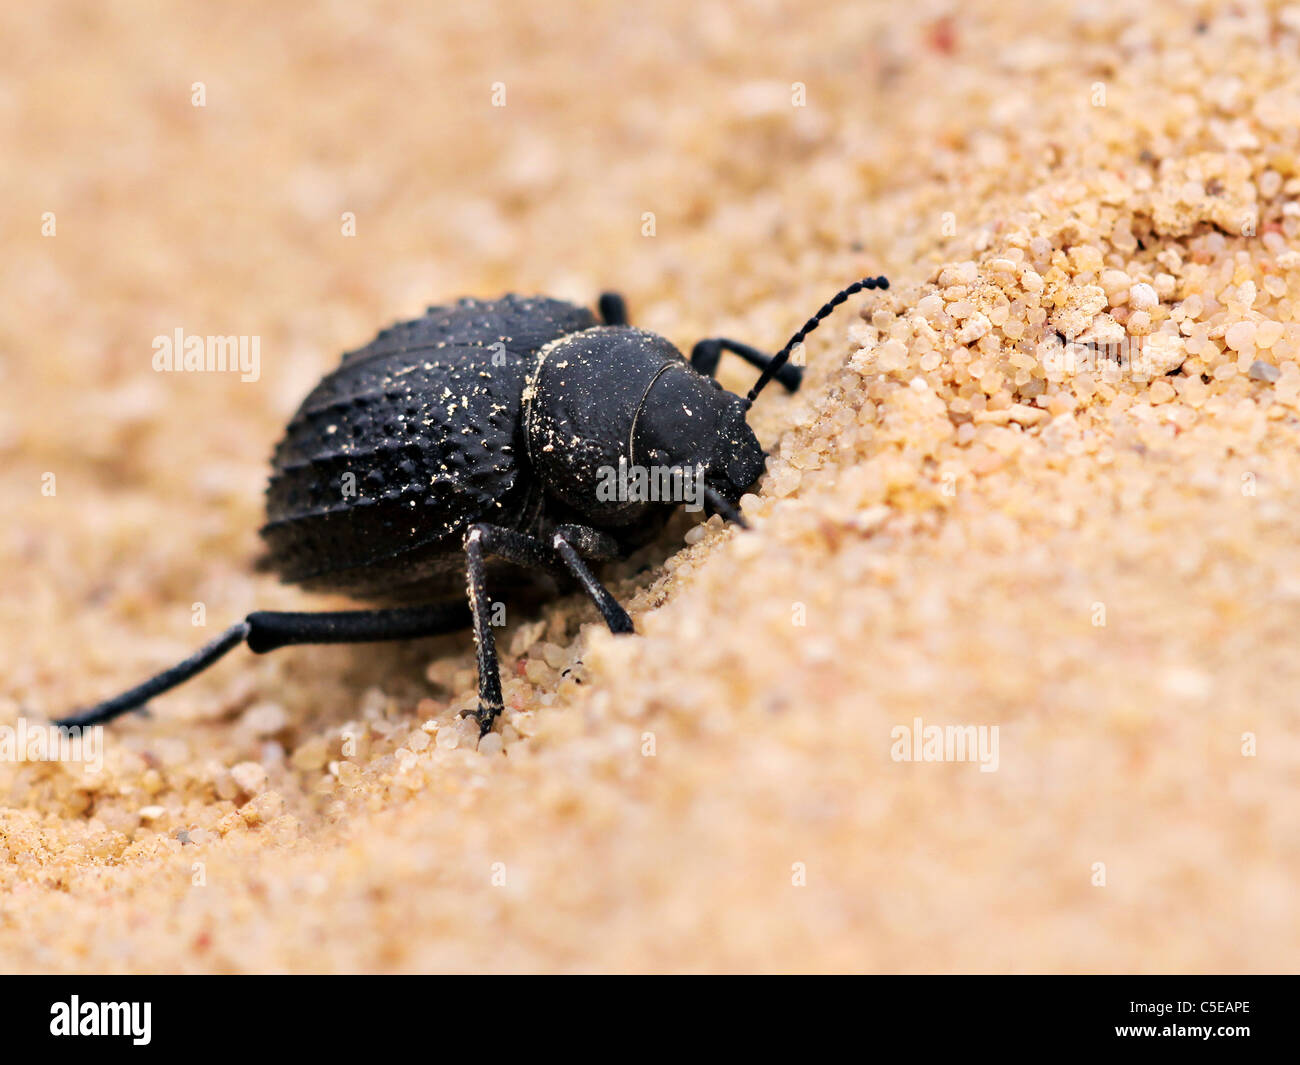 Beetle chiedendo nel deserto Foto Stock